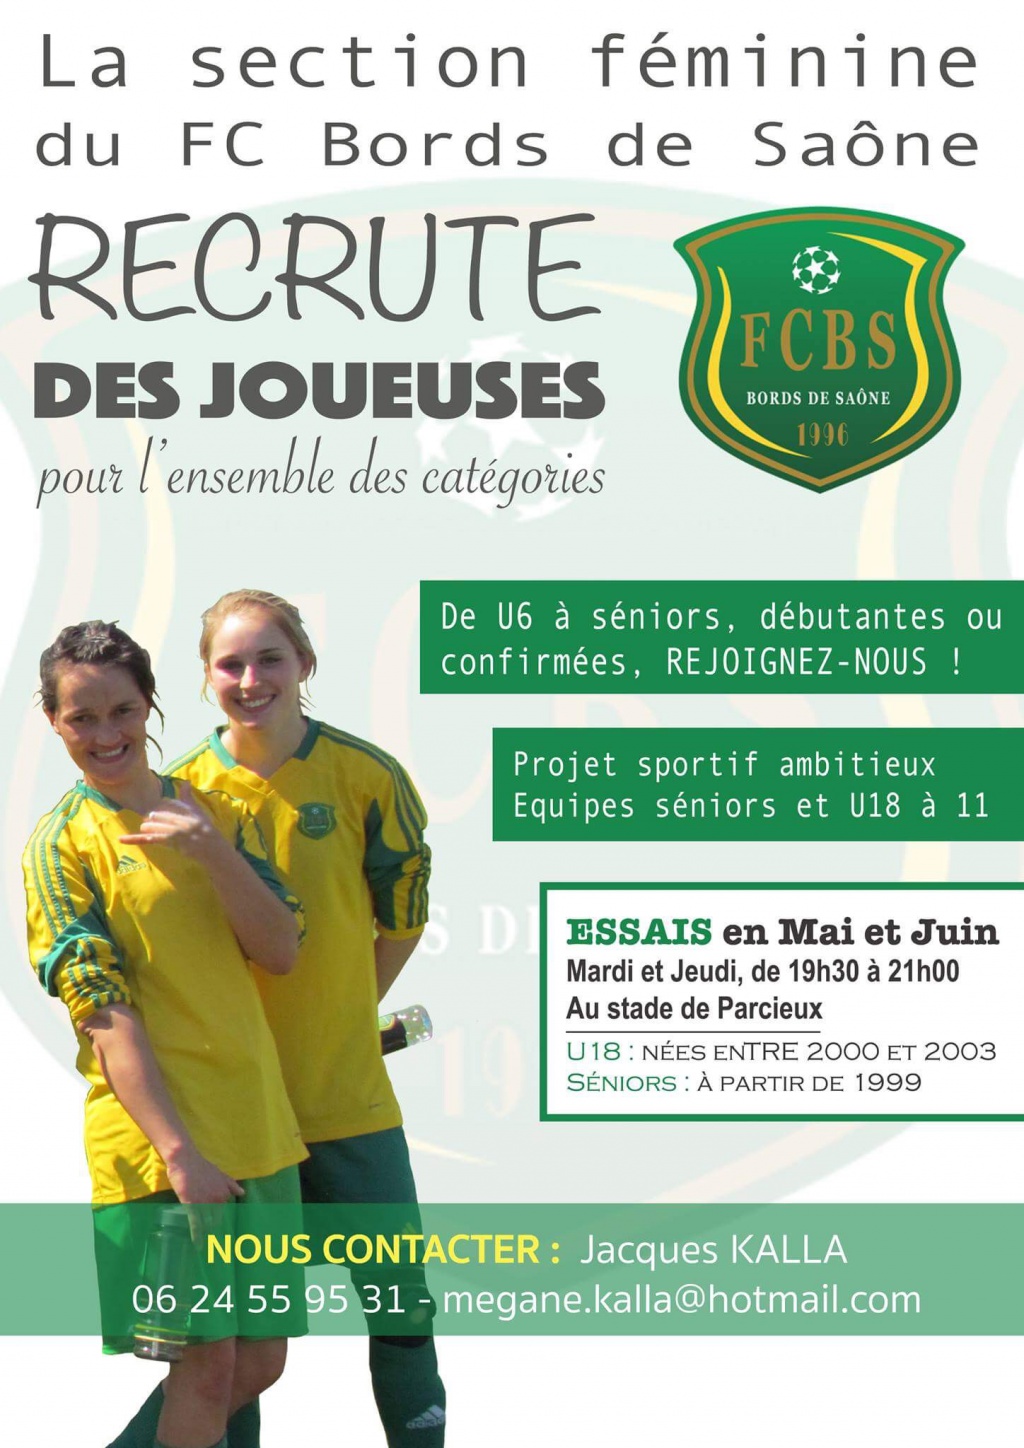 La section féminine du FC Bords de Saône recrute